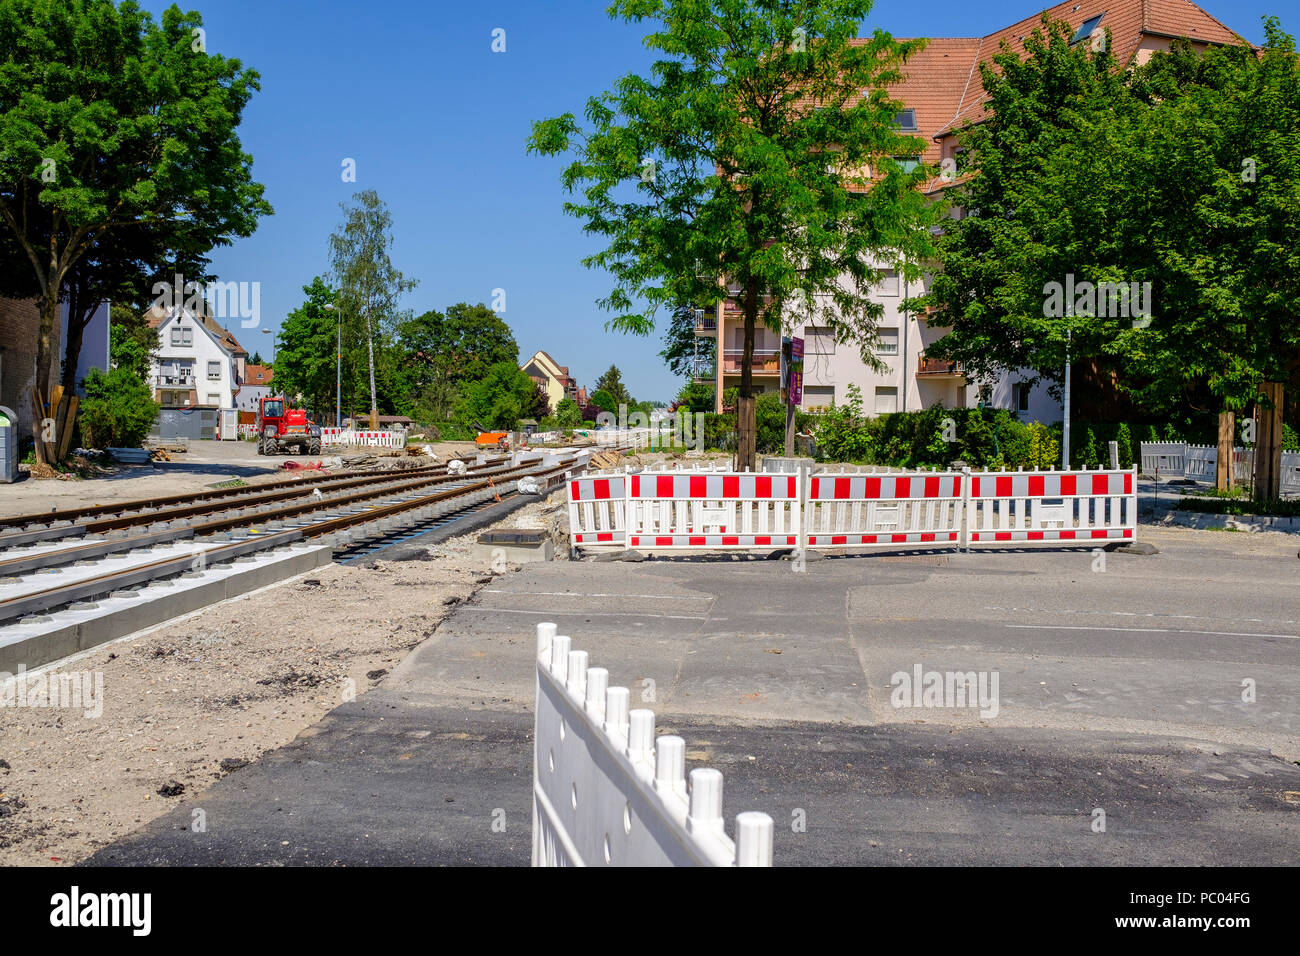 Strasburgo, tram sito in costruzione, binari ferroviari, calcestruzzo letto, sicurezza barriere in plastica, case, linea e estensione, Alsazia, Francia, Europa Foto Stock